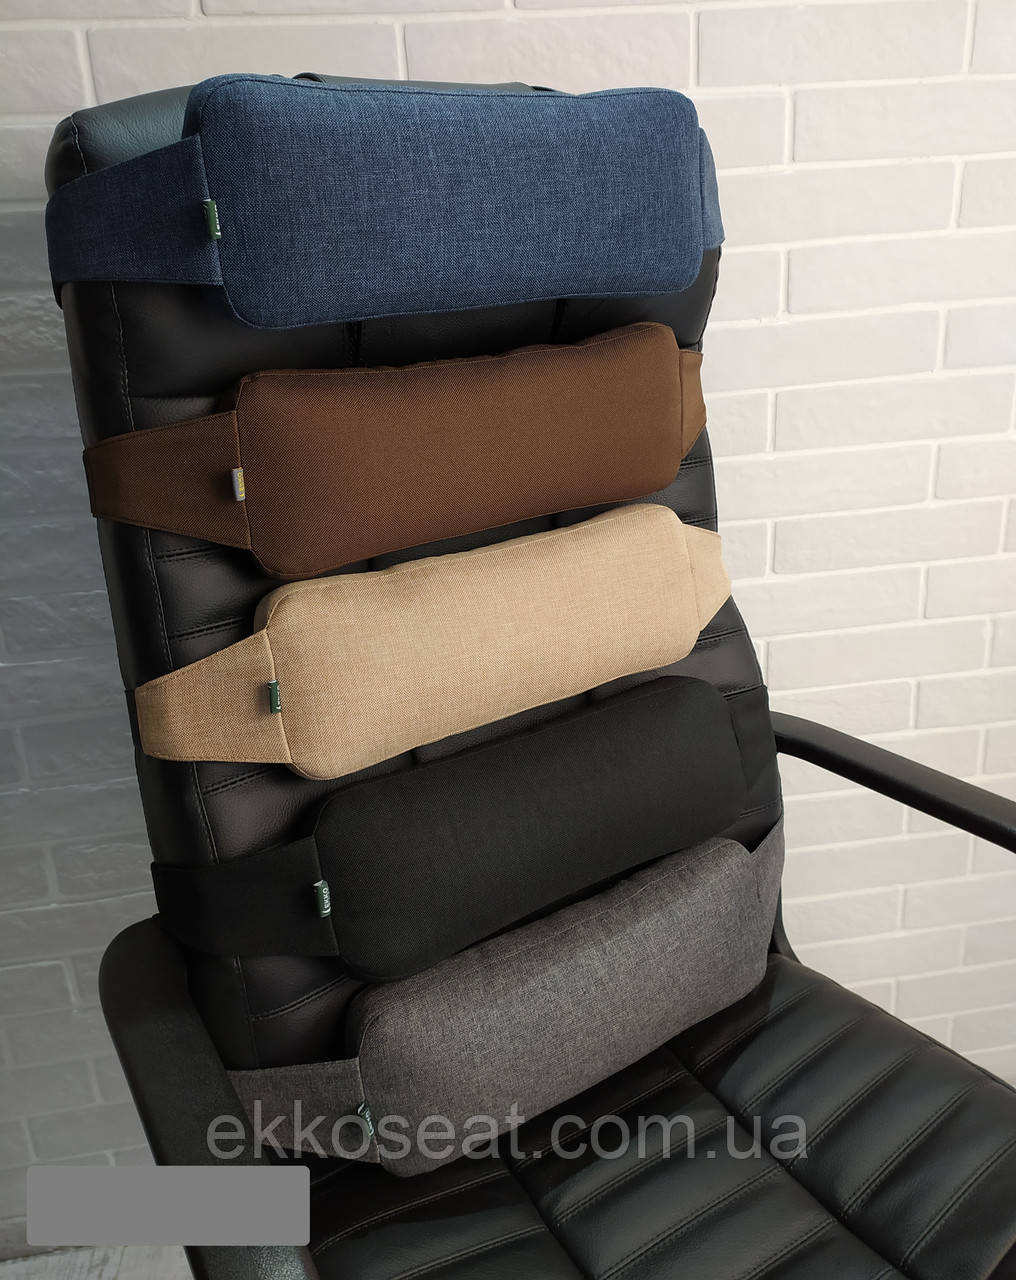 Ортопедична подушка EKKOSEAT під спину для офісного крісла керівника